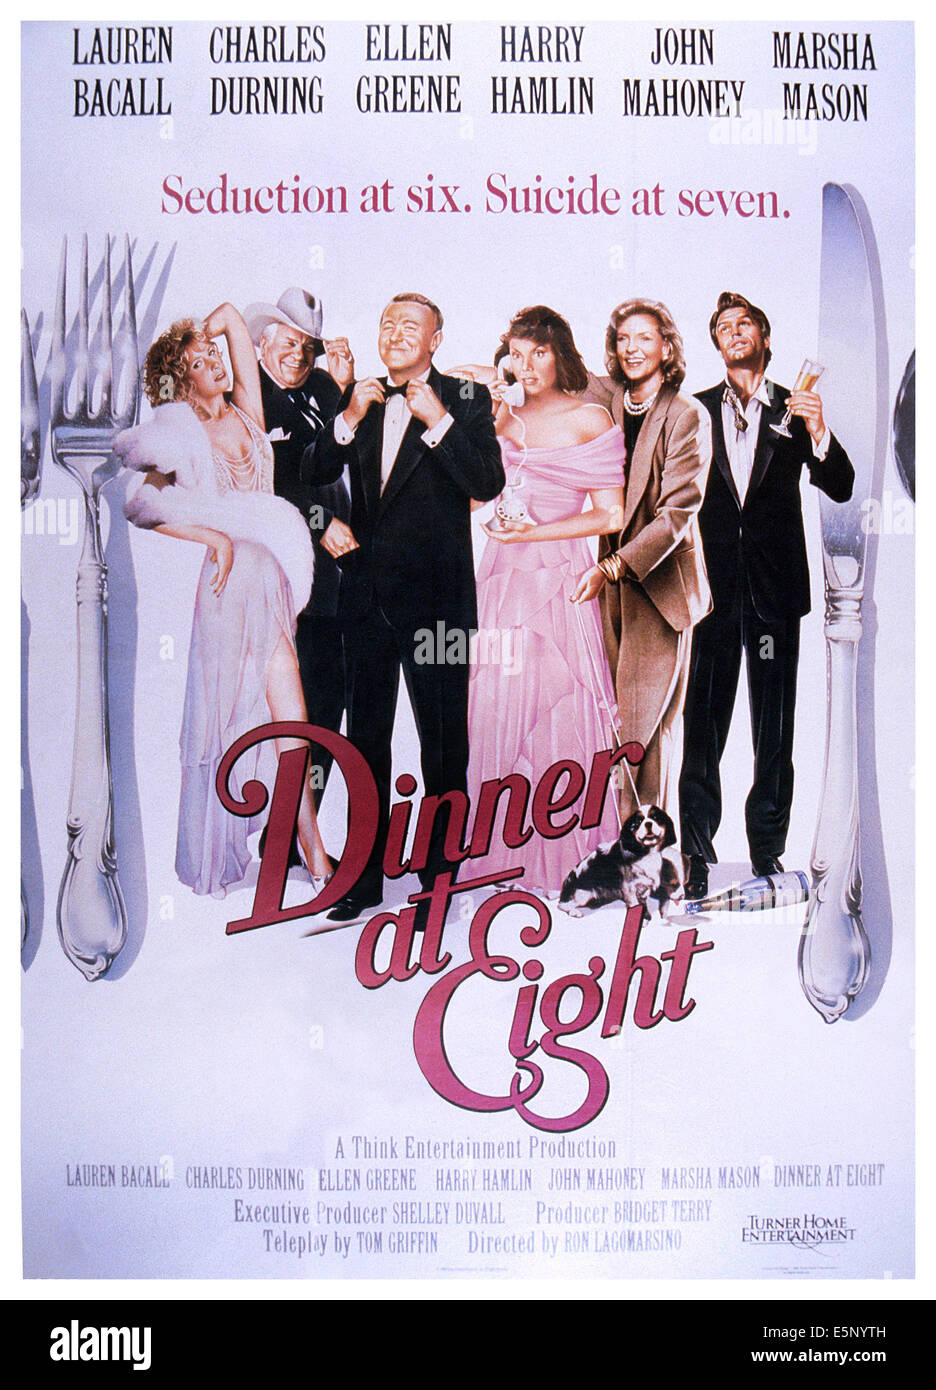 DINNER AT EIGHT, poster, from left: Ellen Greene, Charles Durning, John Mahoney, Marsha Mason, Lauren Bacall, Harry Hamlin, Stock Photo